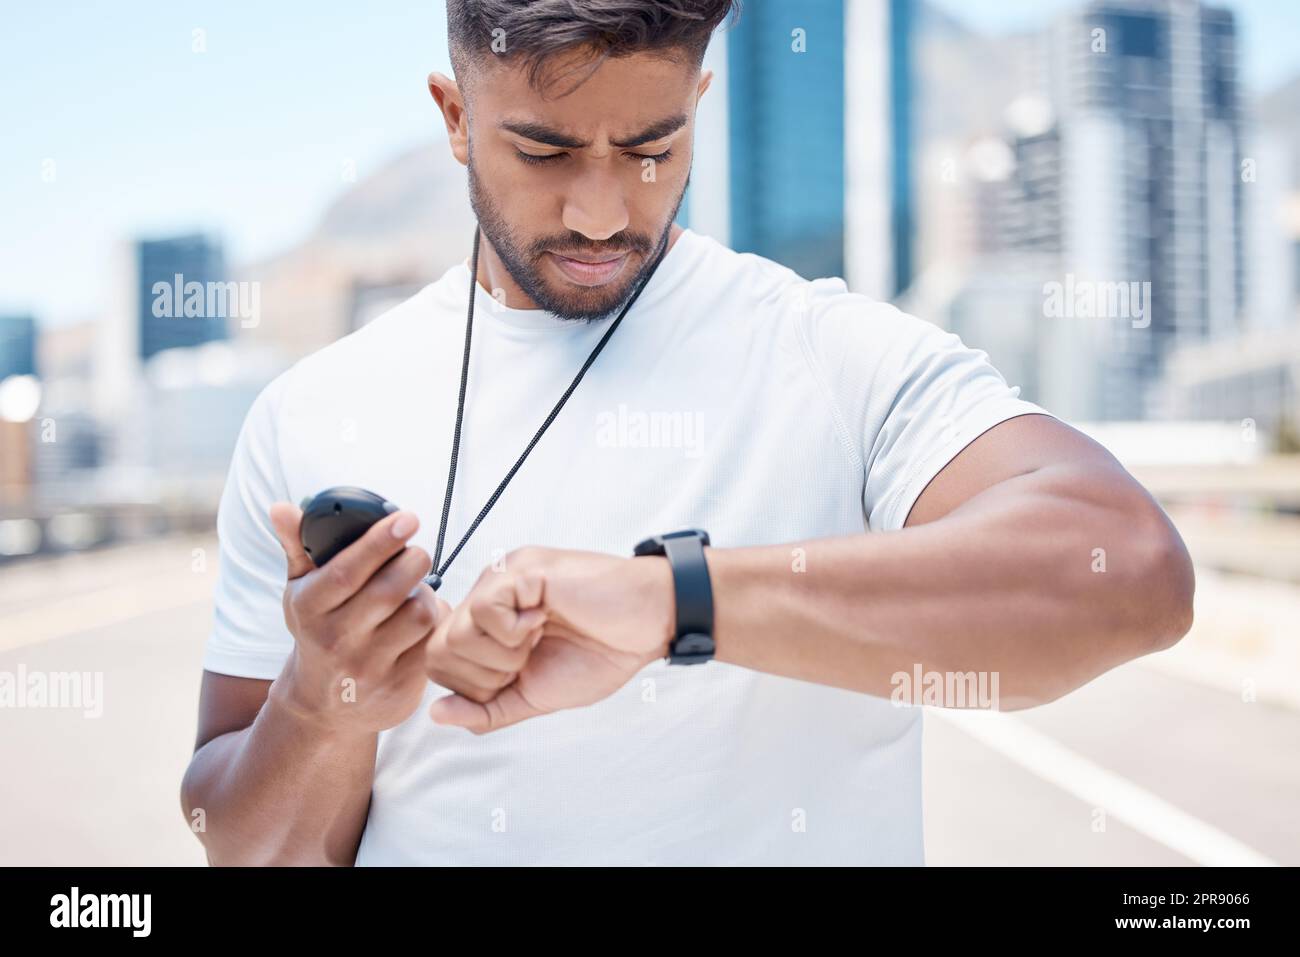 Junger männlicher Sportler mit gemischten Rassen, der den digitalen Chronometer und die Smartwatch überprüft, um die Zeit während eines Workouts aufzuzeichnen. Ein Sportler überwacht seine Leistung oder seinen Fortschritt während eines Laufs in der Stadt Stockfoto